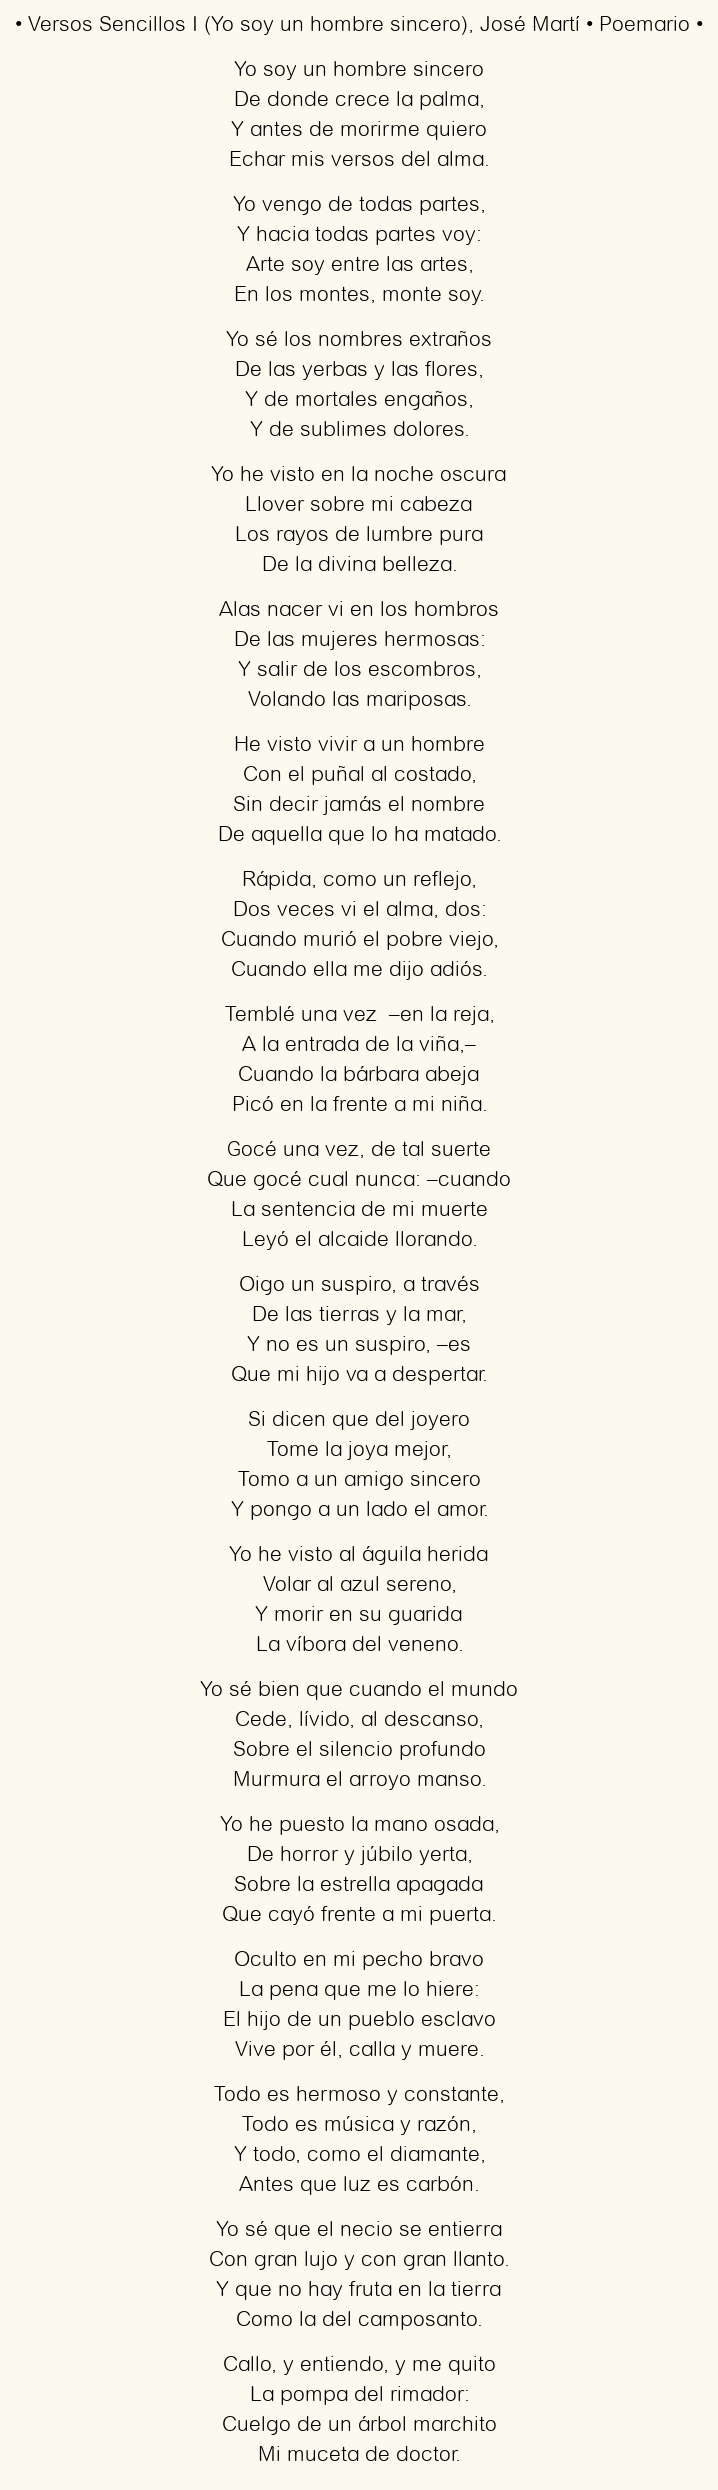 Imagen con el poema Versos Sencillos I (Yo soy un hombre sincero), por José Martí